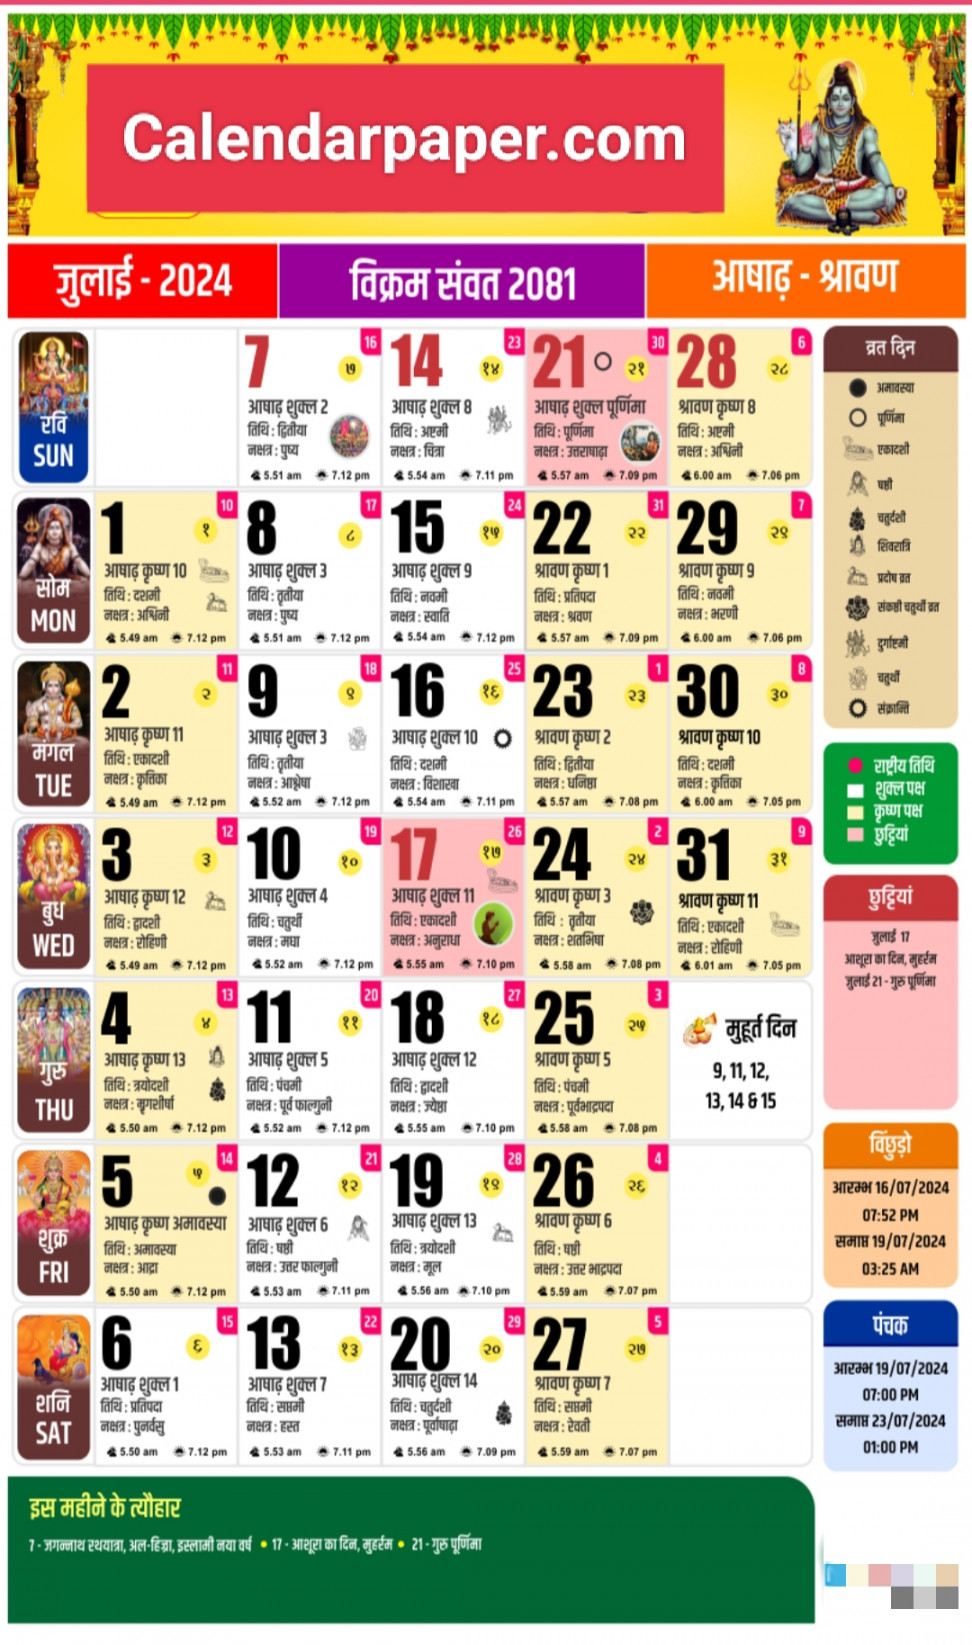 July  Hindu calendar all festivals, tithi, panchang, and